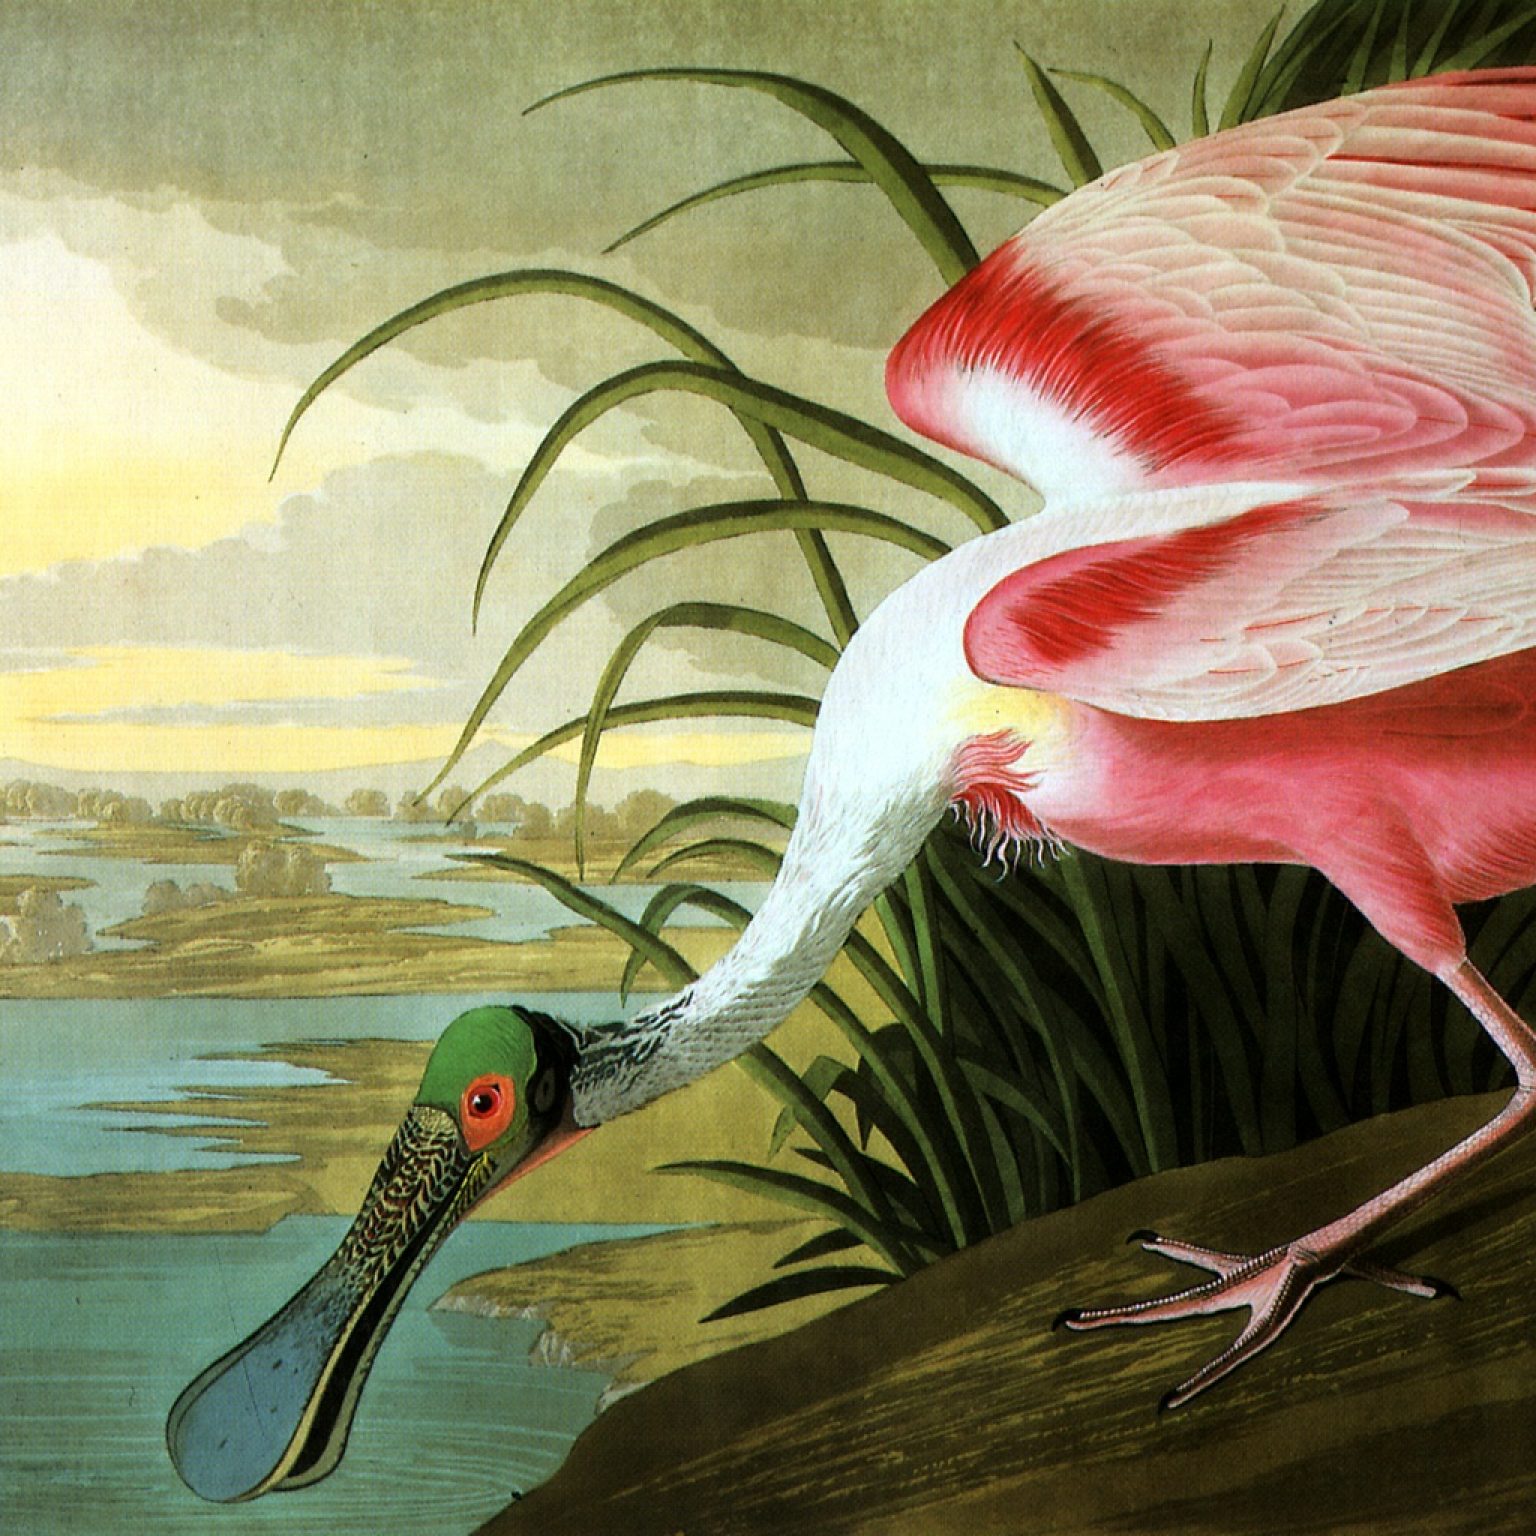 Владимир Смирнов - Каждый раз к нам приходит (Джон Джеймс Одюбон - Птицы Америки (Розовая колпица), 1785 год)